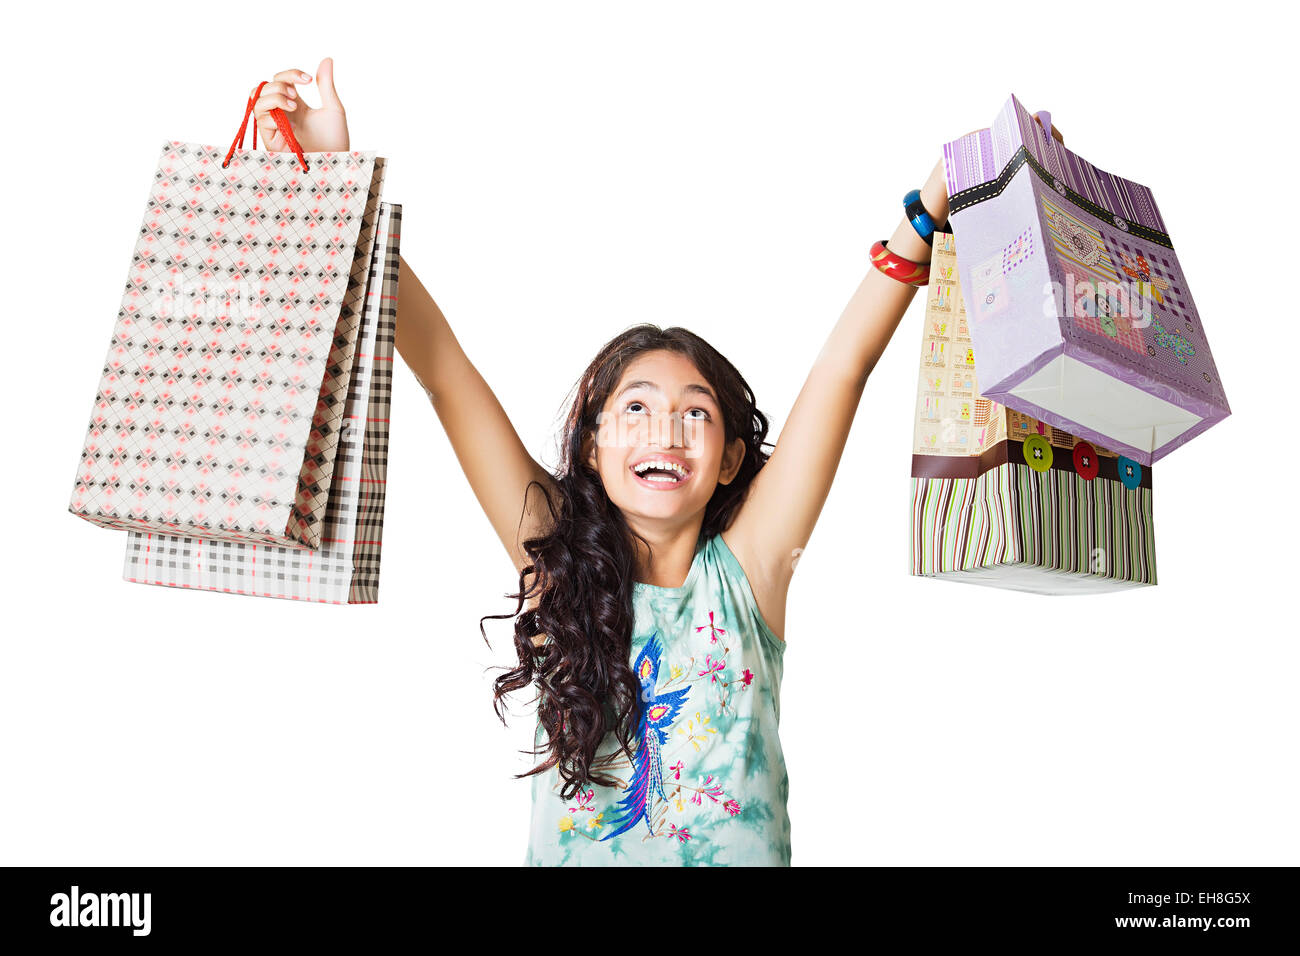 1 indian giovane ragazza adolescente borsa shopping Lo shopping Foto Stock